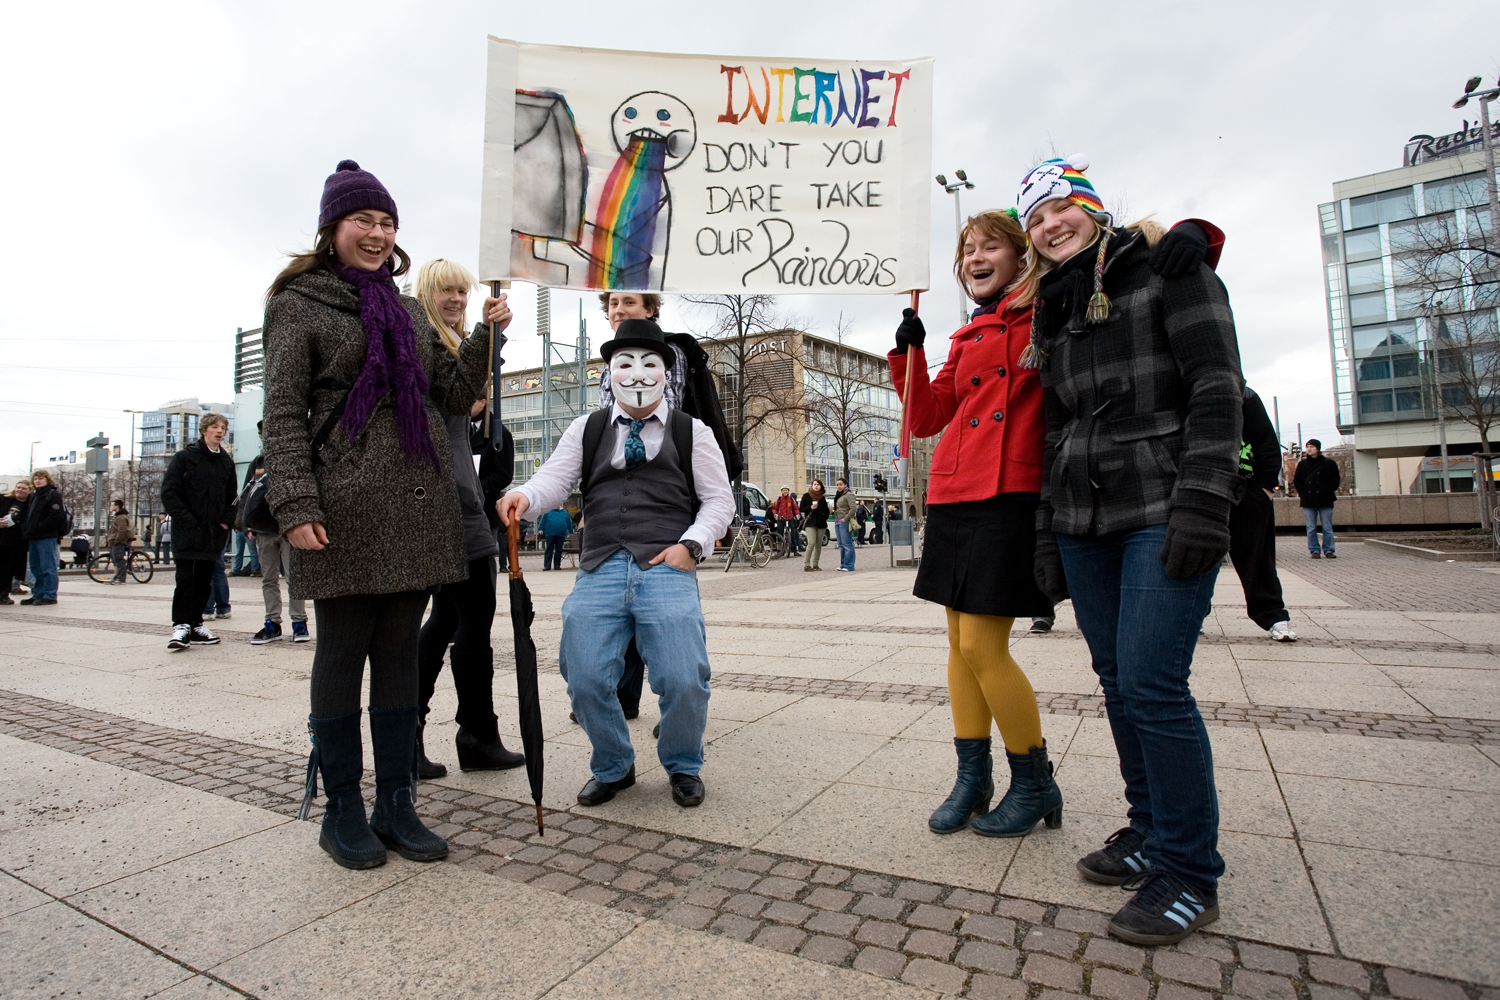   ACTA ad Acta again | Bilder von der Leipziger Demonstration gegen das Handelsabkommen  